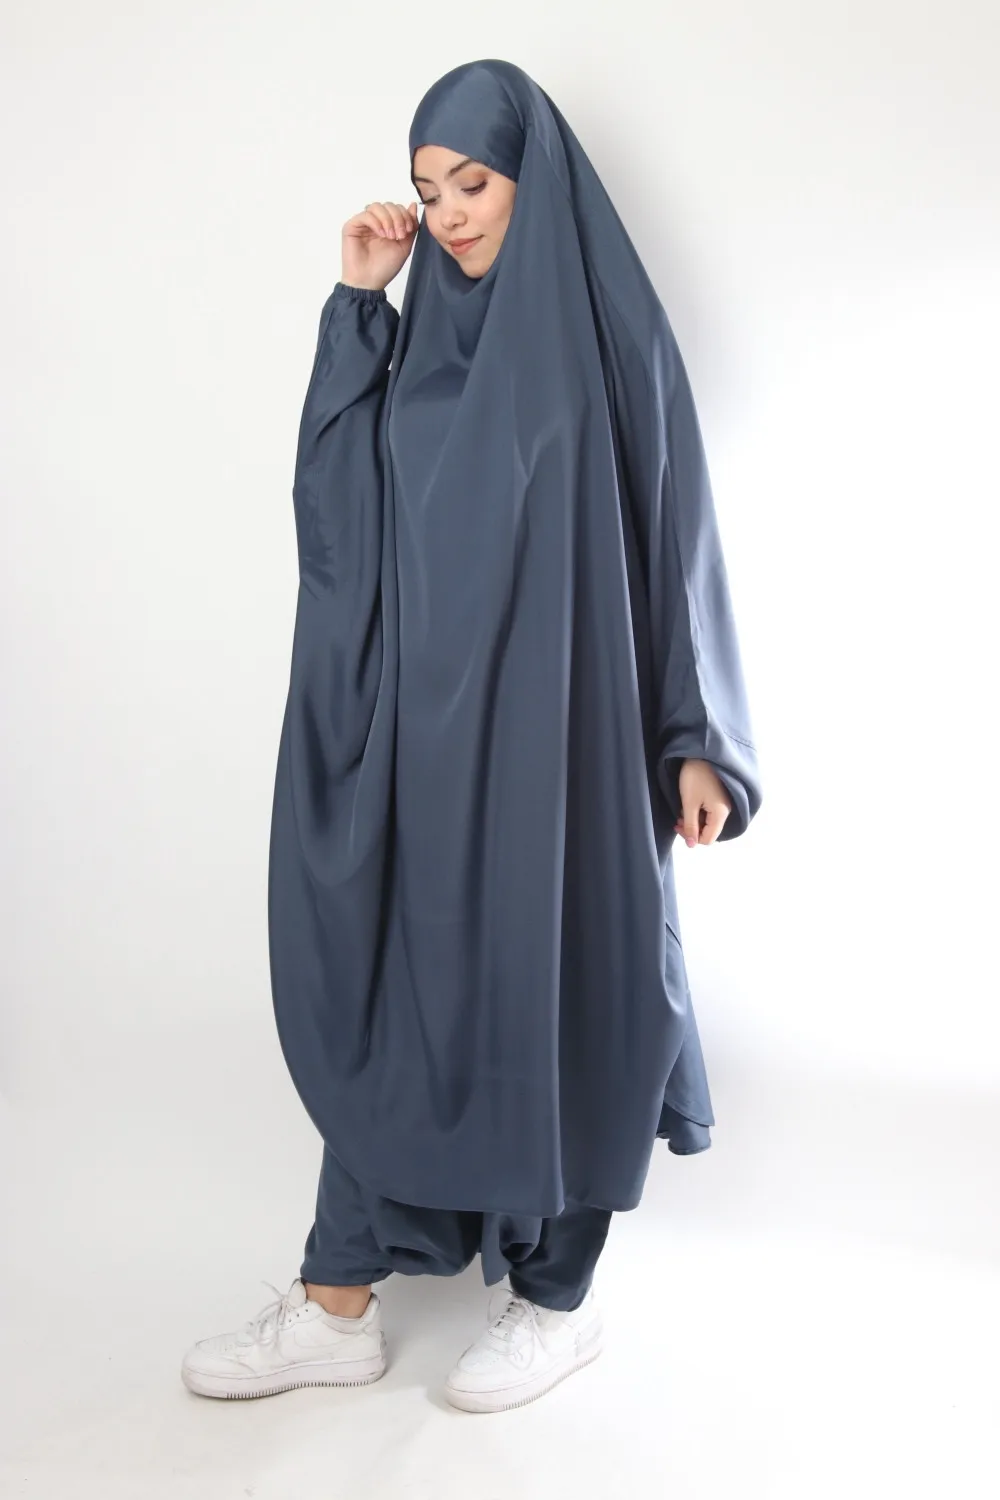 ИД мусульманская длинная одежда Khimar Paryer комплект из 2 предметов Abaya платье брюки костюмы полное покрытие мусульманская одежда Кафтан цзилба...